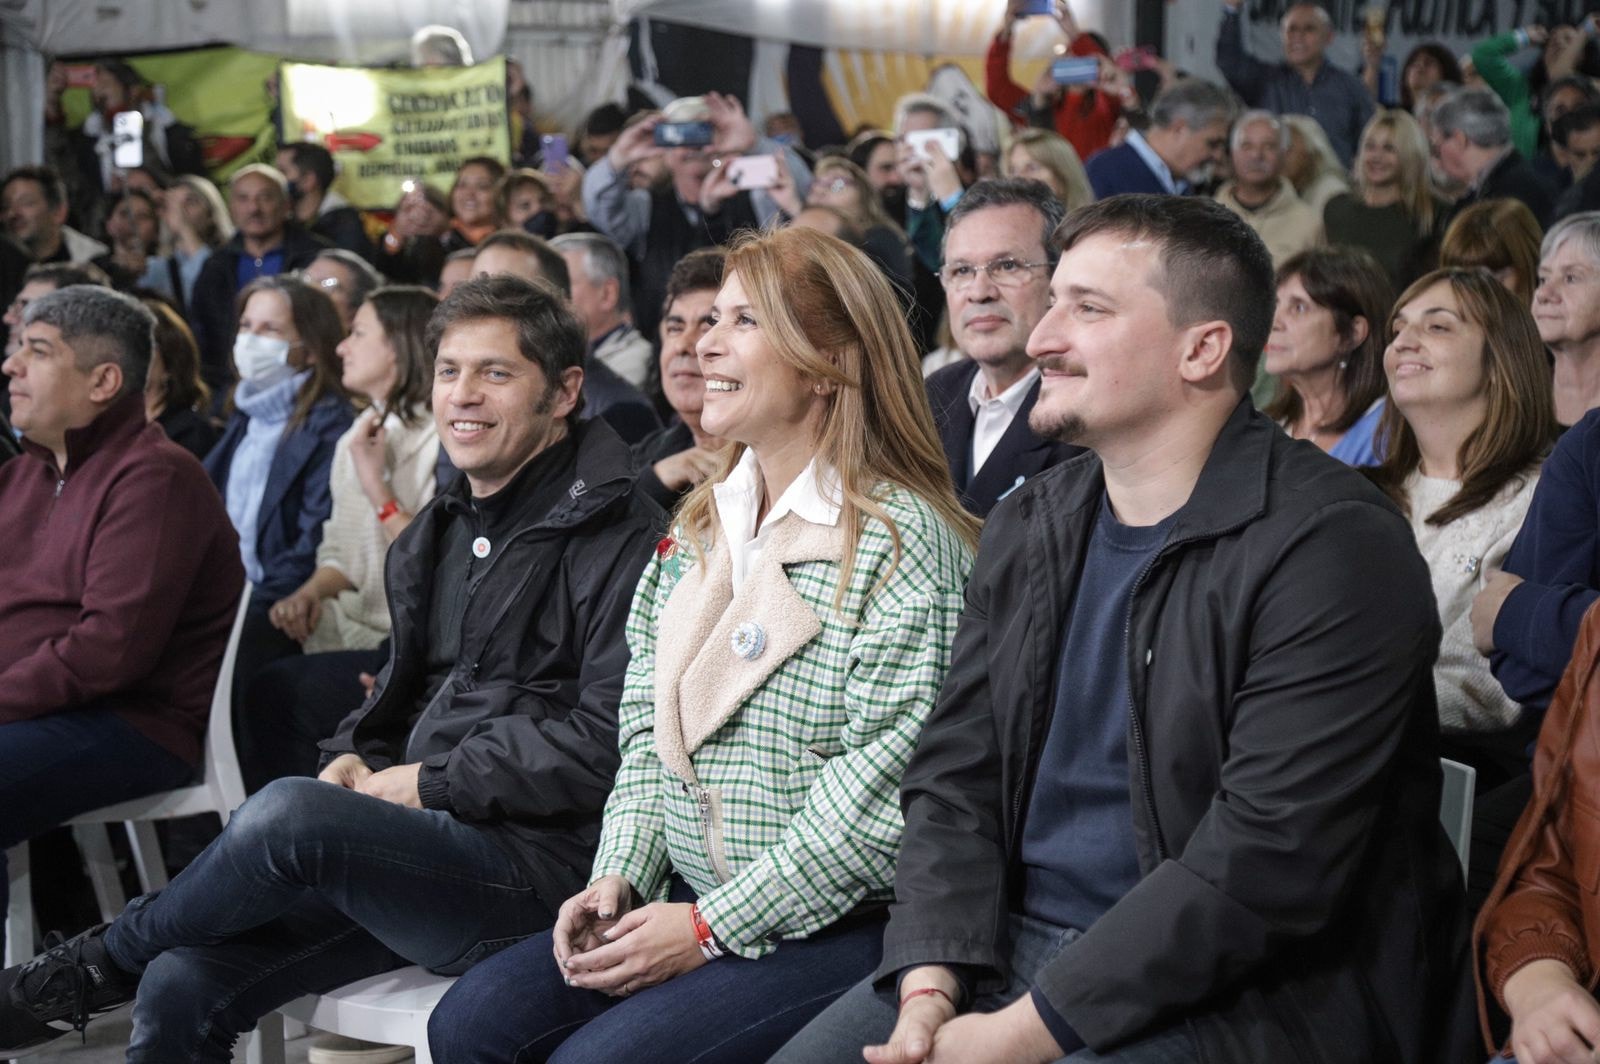 Cristina Fernández de Kirchner encabezó un acto multitudinario en Avellaneda